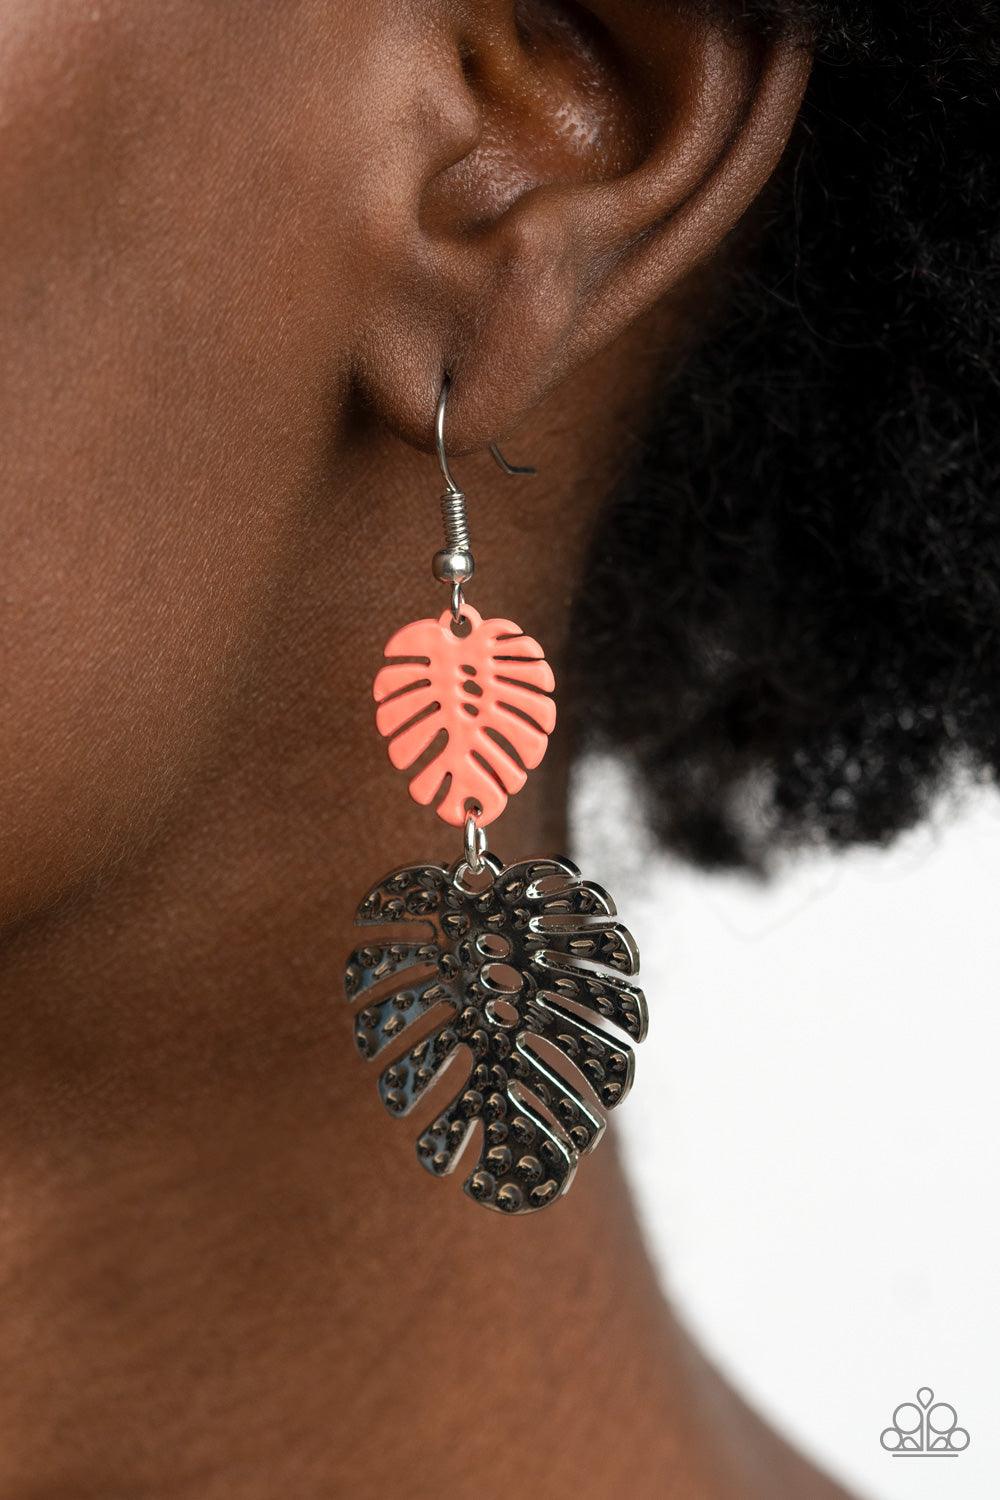 Palm Tree Cabana Orange Earrings - Jewelry by Bretta